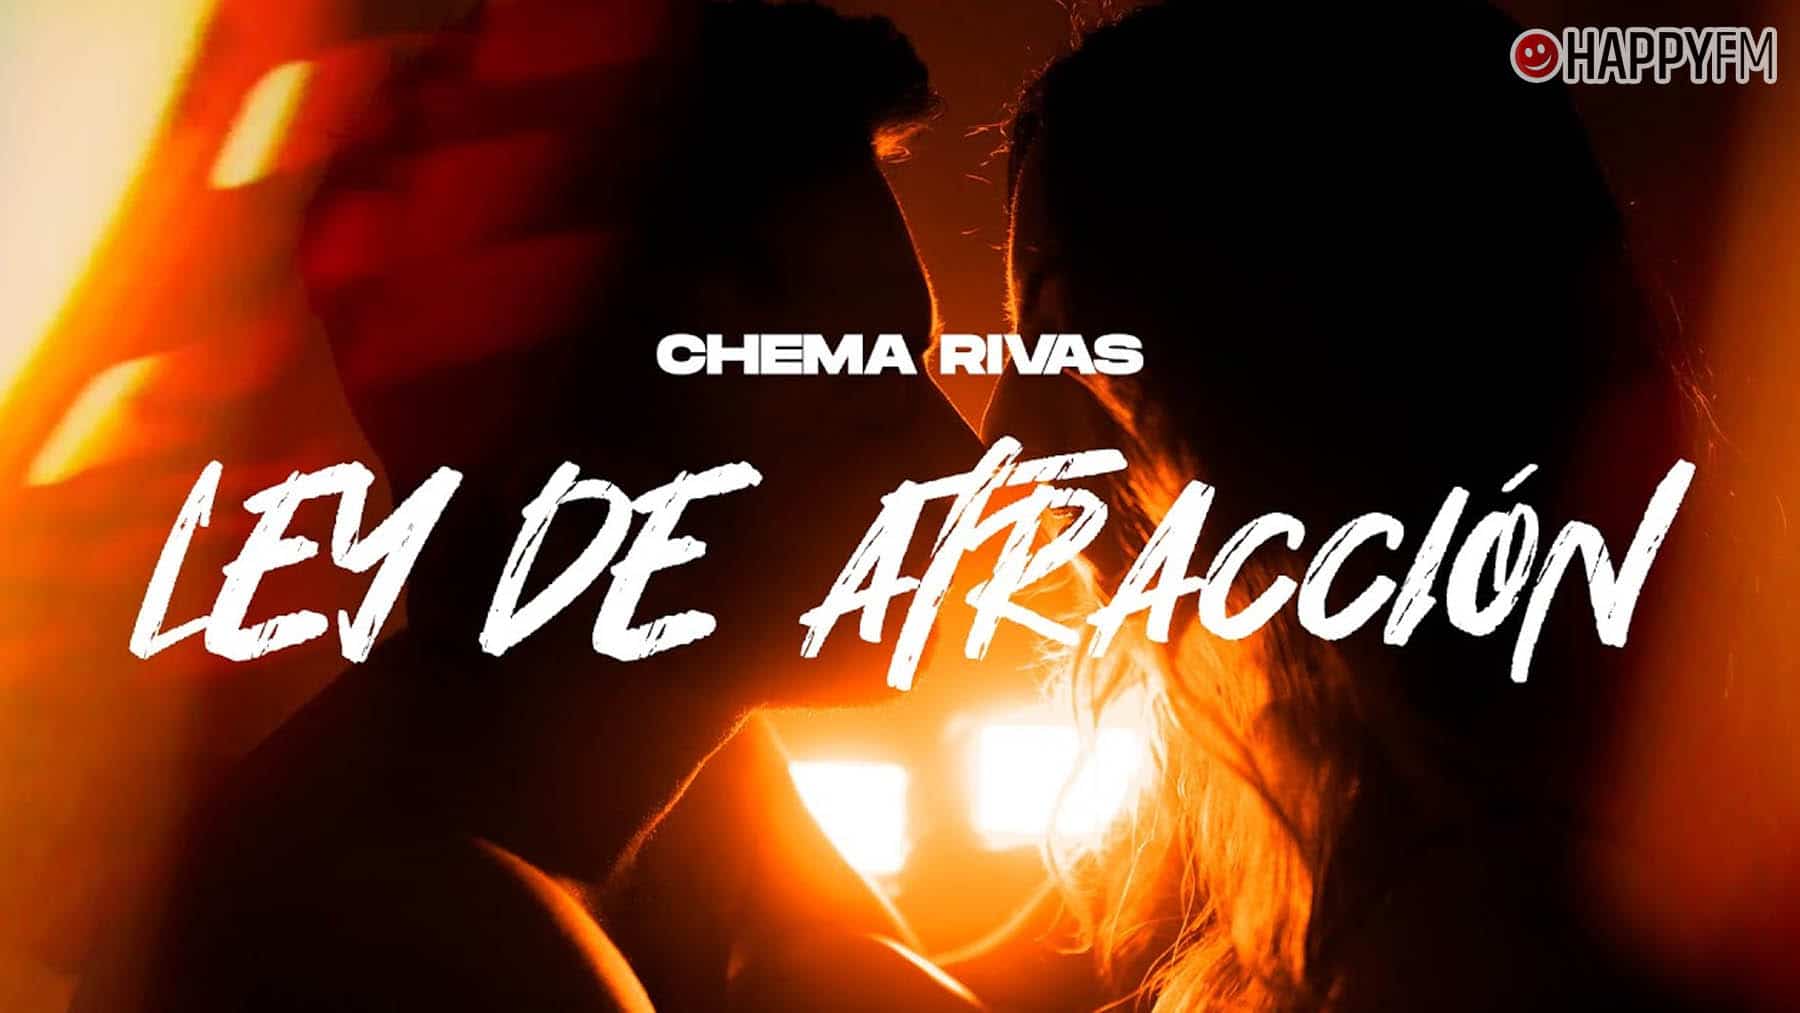 ‘Ley de atracción’, de Chema Rivas: letra y vídeo